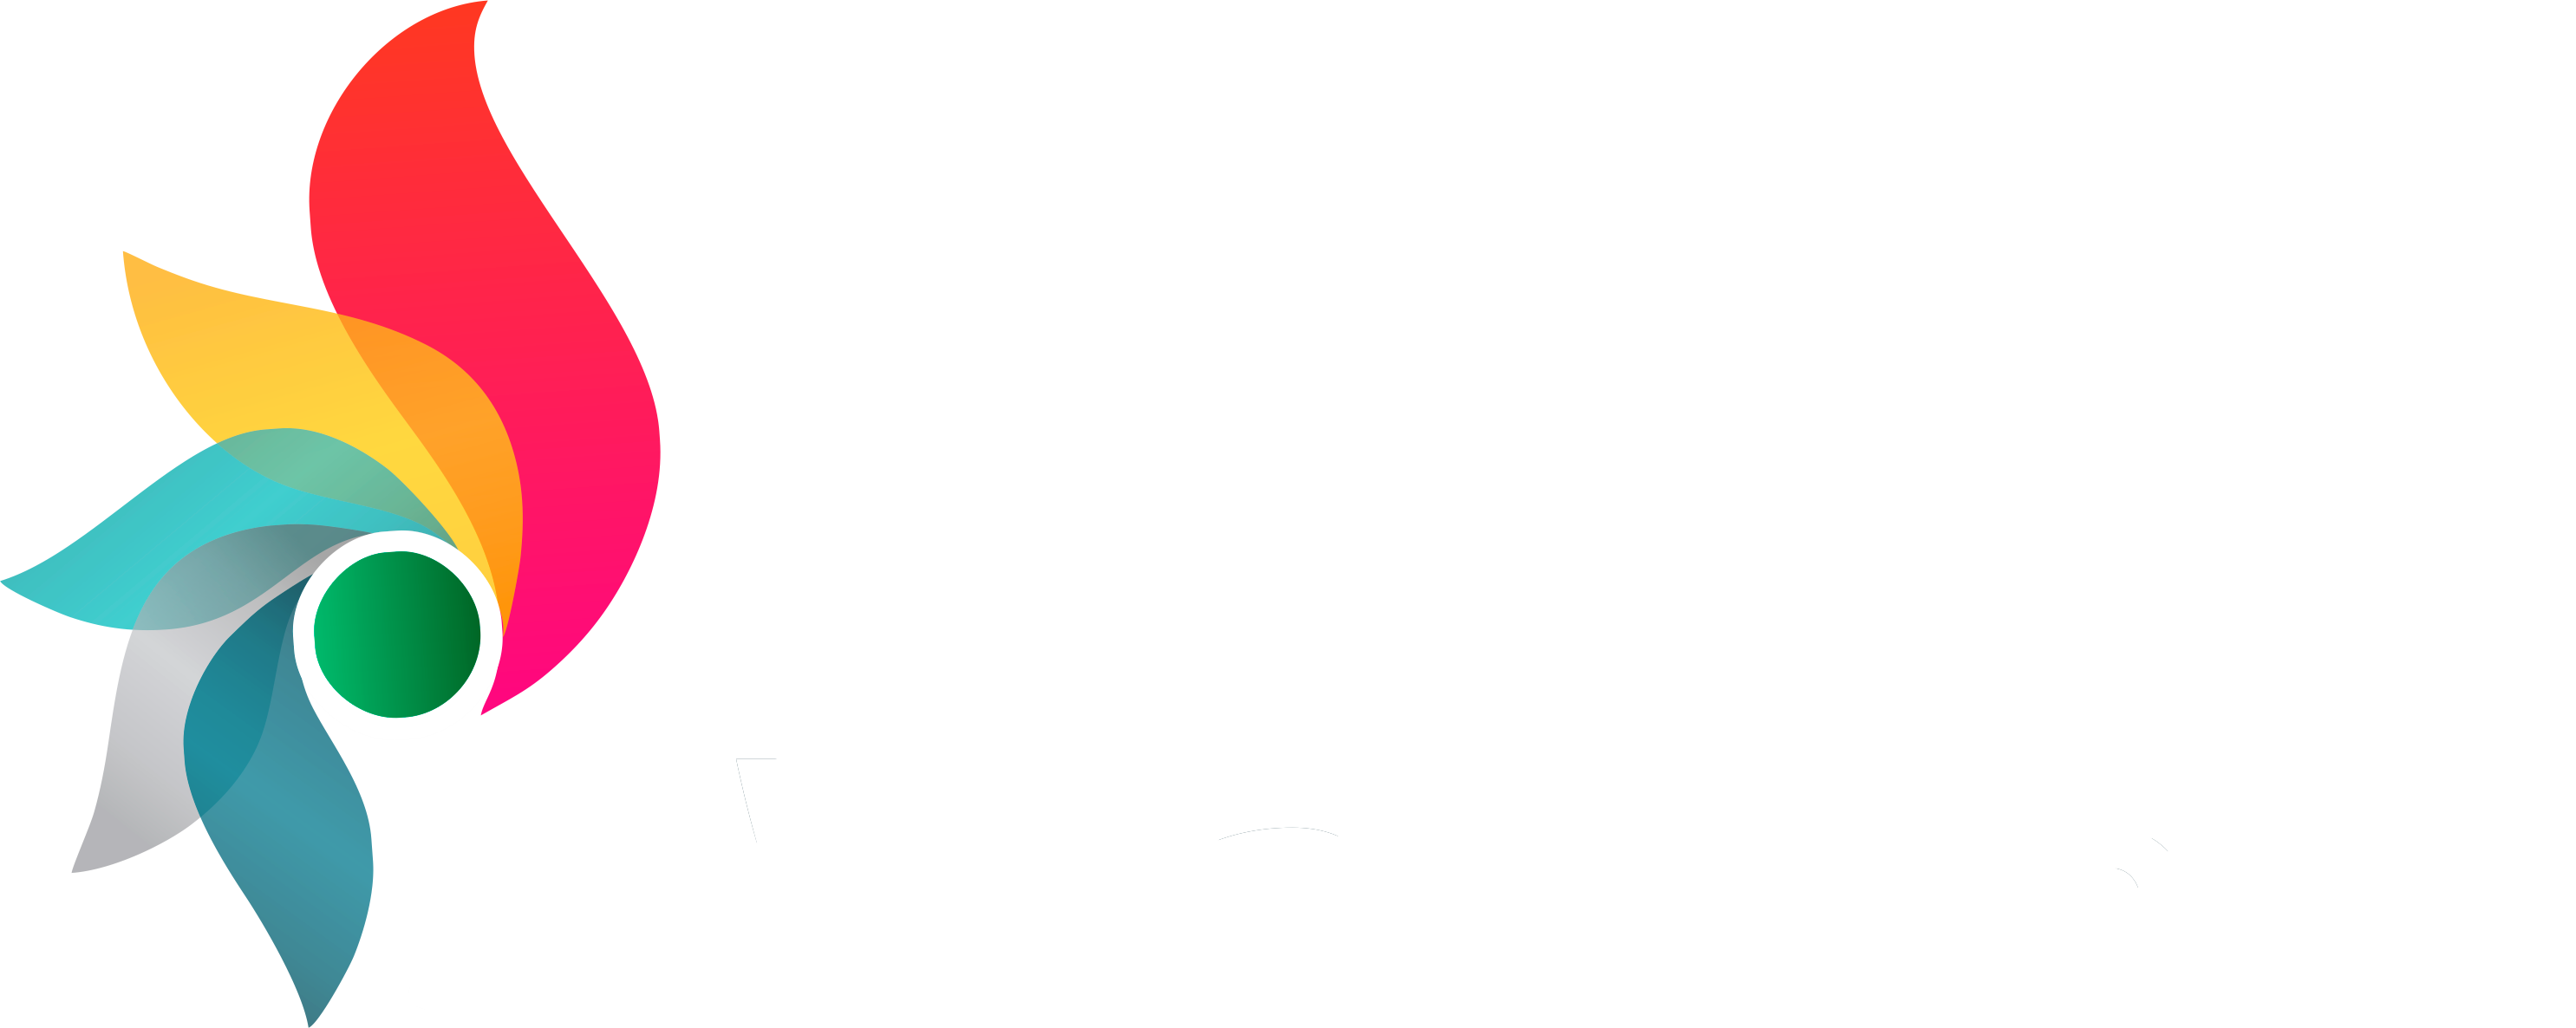 svinfratech logo